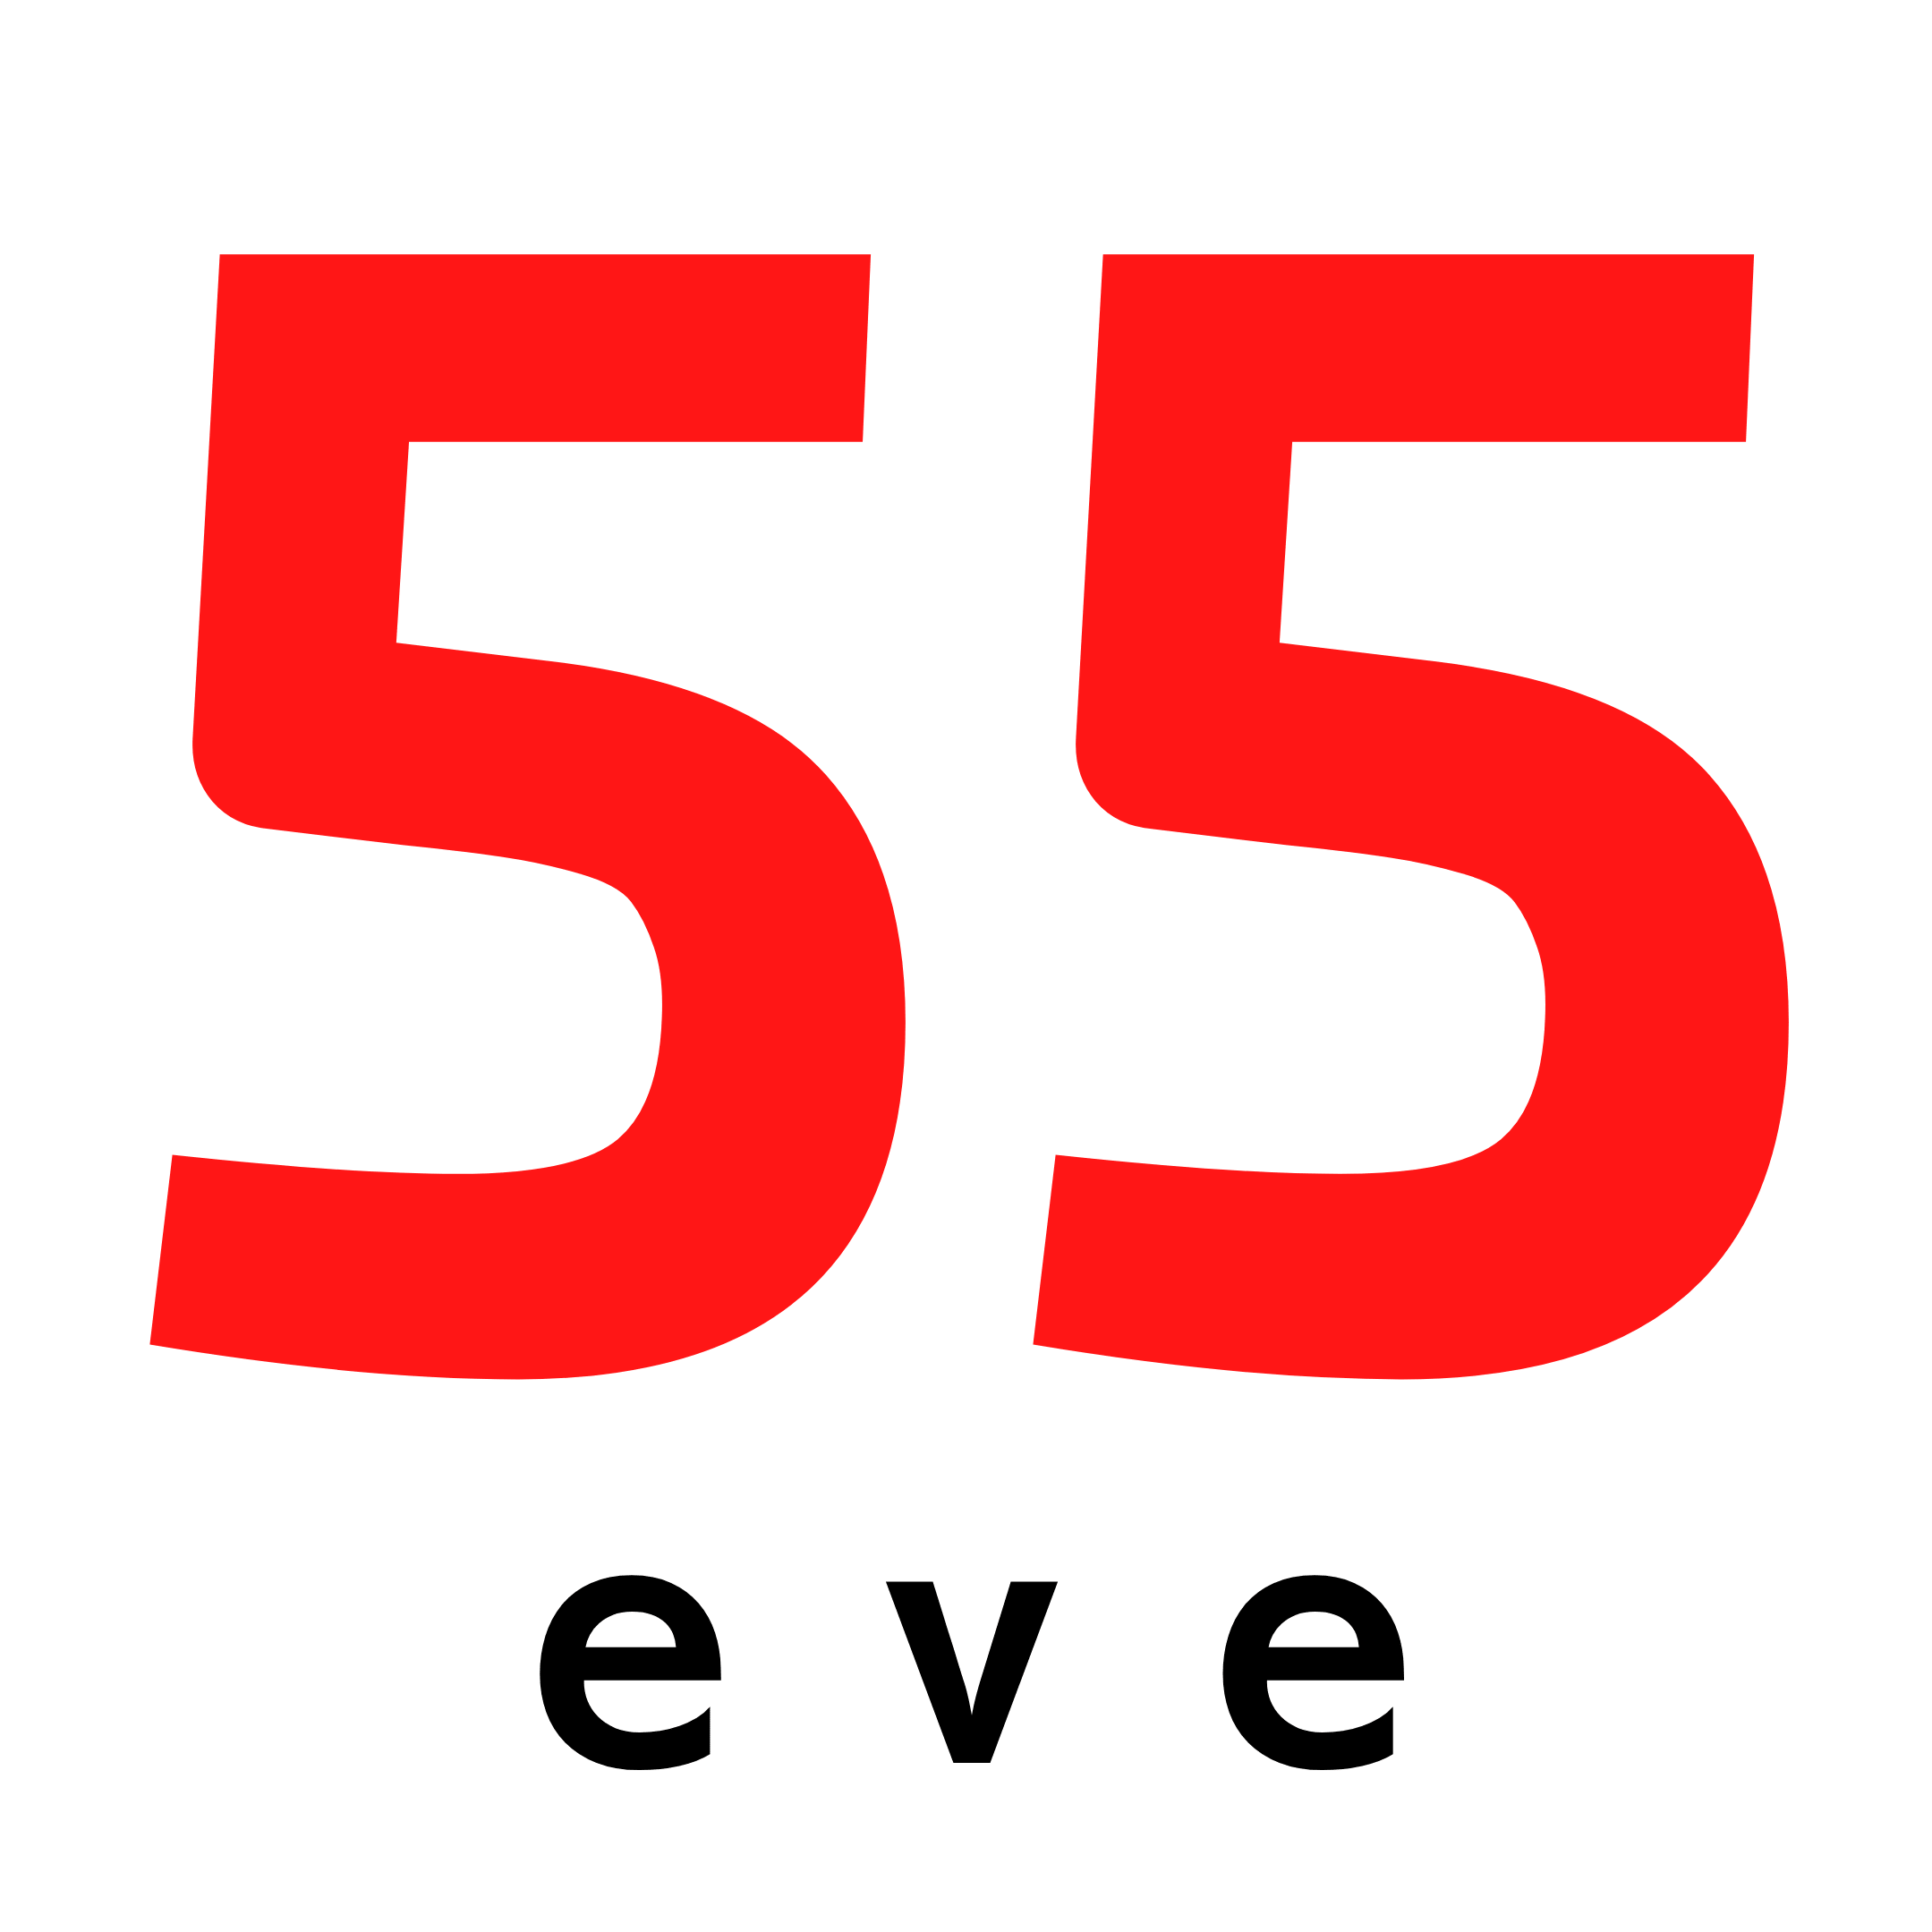 55eve_logo